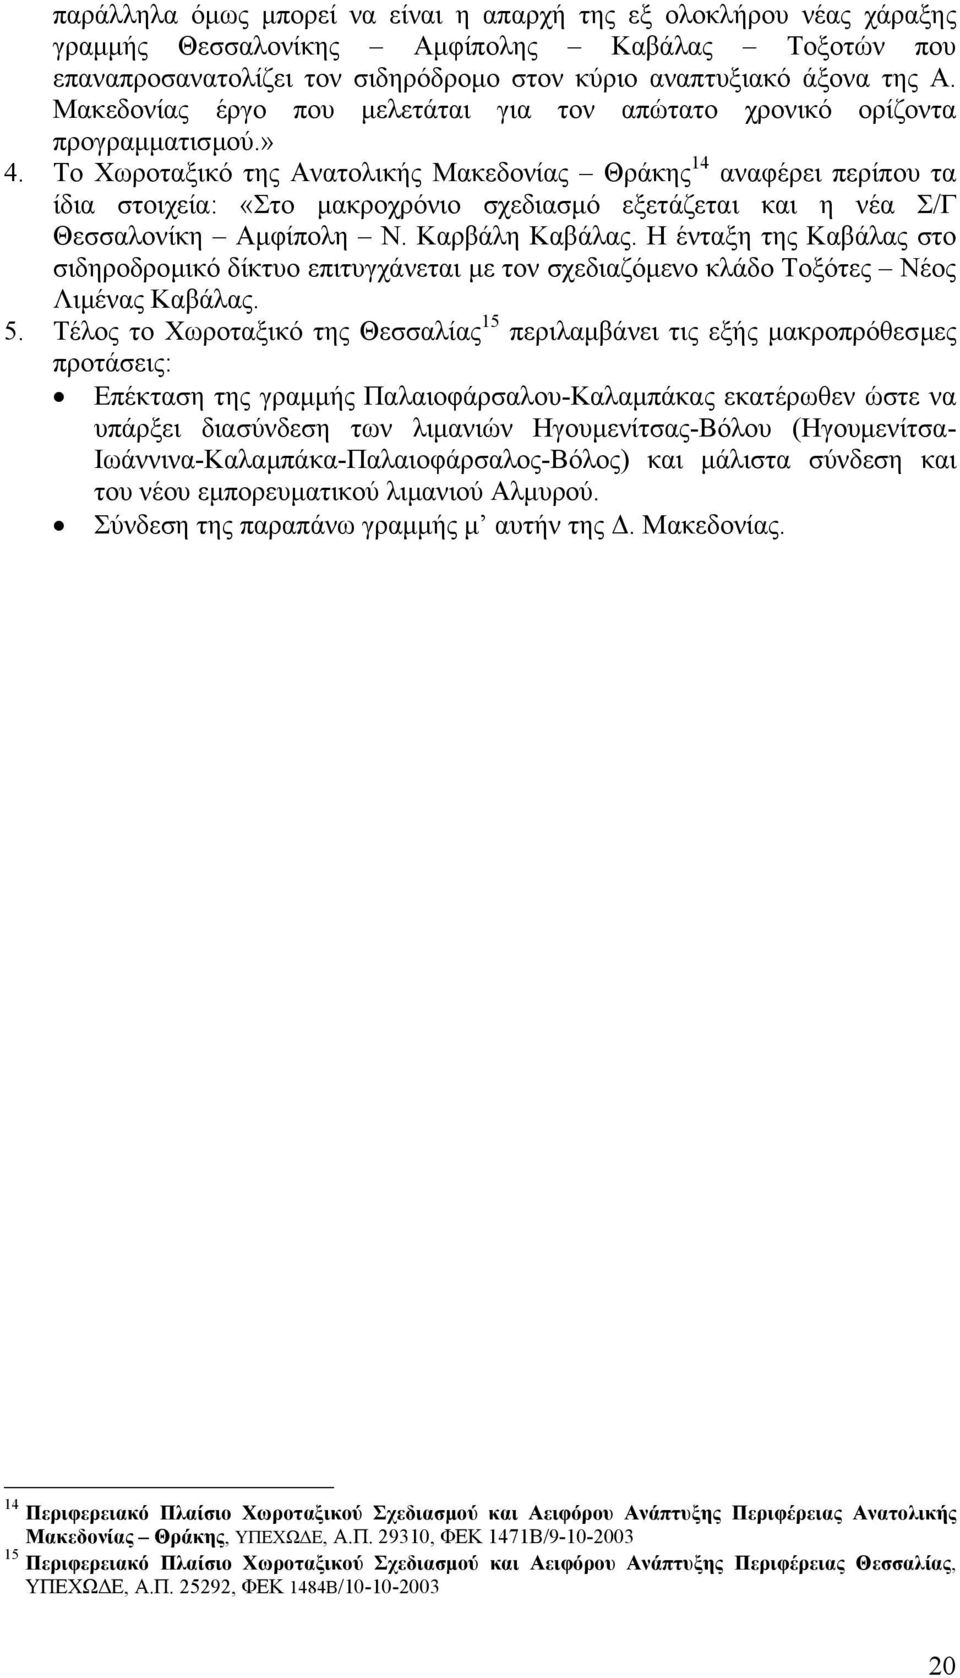 Το Χωροταξικό της Ανατολικής Μακεδονίας Θράκης 14 αναφέρει περίπου τα ίδια στοιχεία: «Στο µακροχρόνιο σχεδιασµό εξετάζεται και η νέα Σ/Γ Θεσσαλονίκη Αµφίπολη Ν. Καρβάλη Καβάλας.